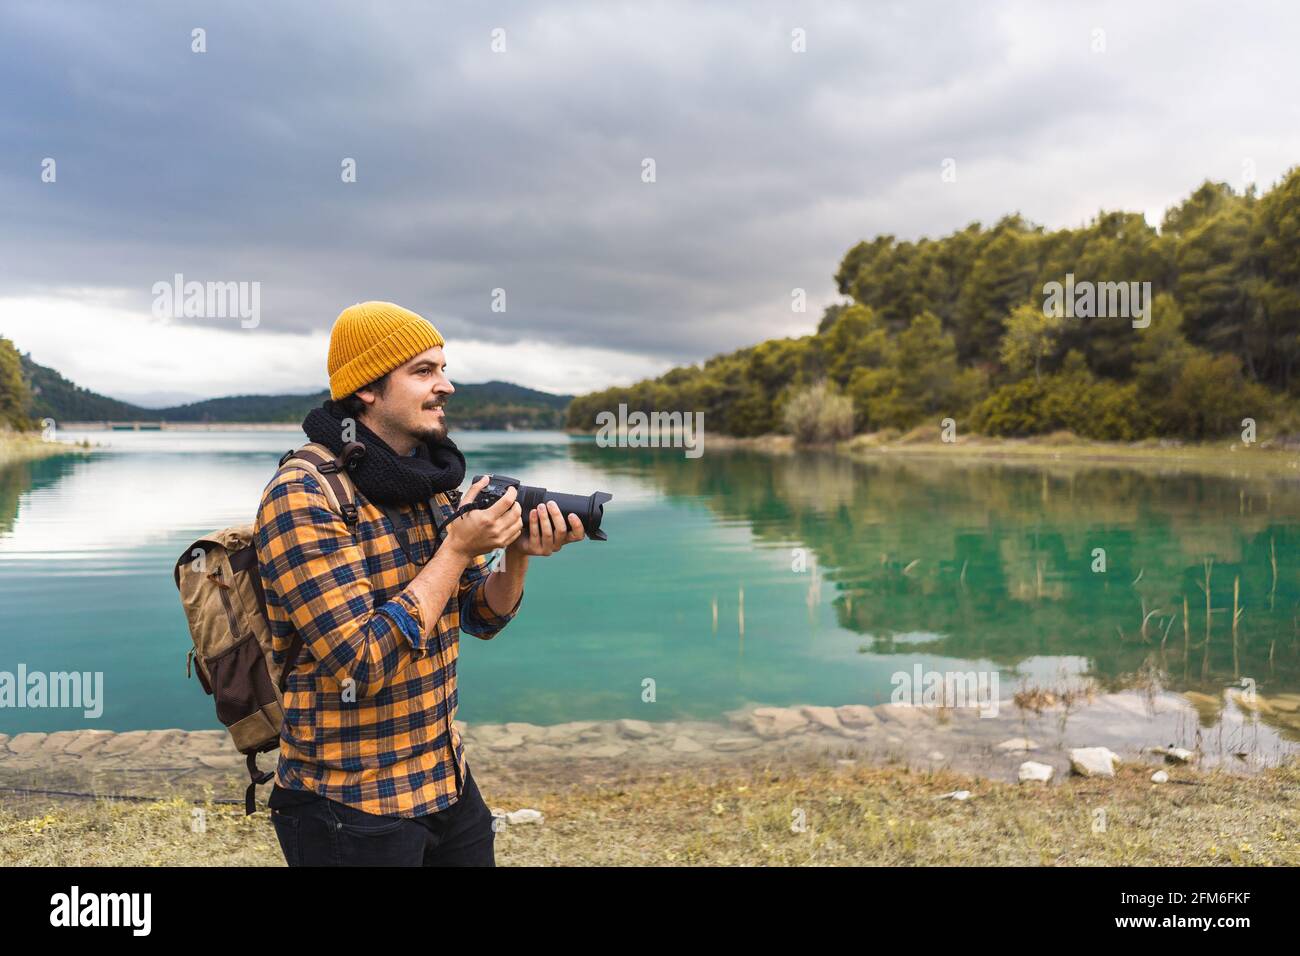 Touriste souriant prenant des photos avec son appareil photo dans la nature Banque D'Images